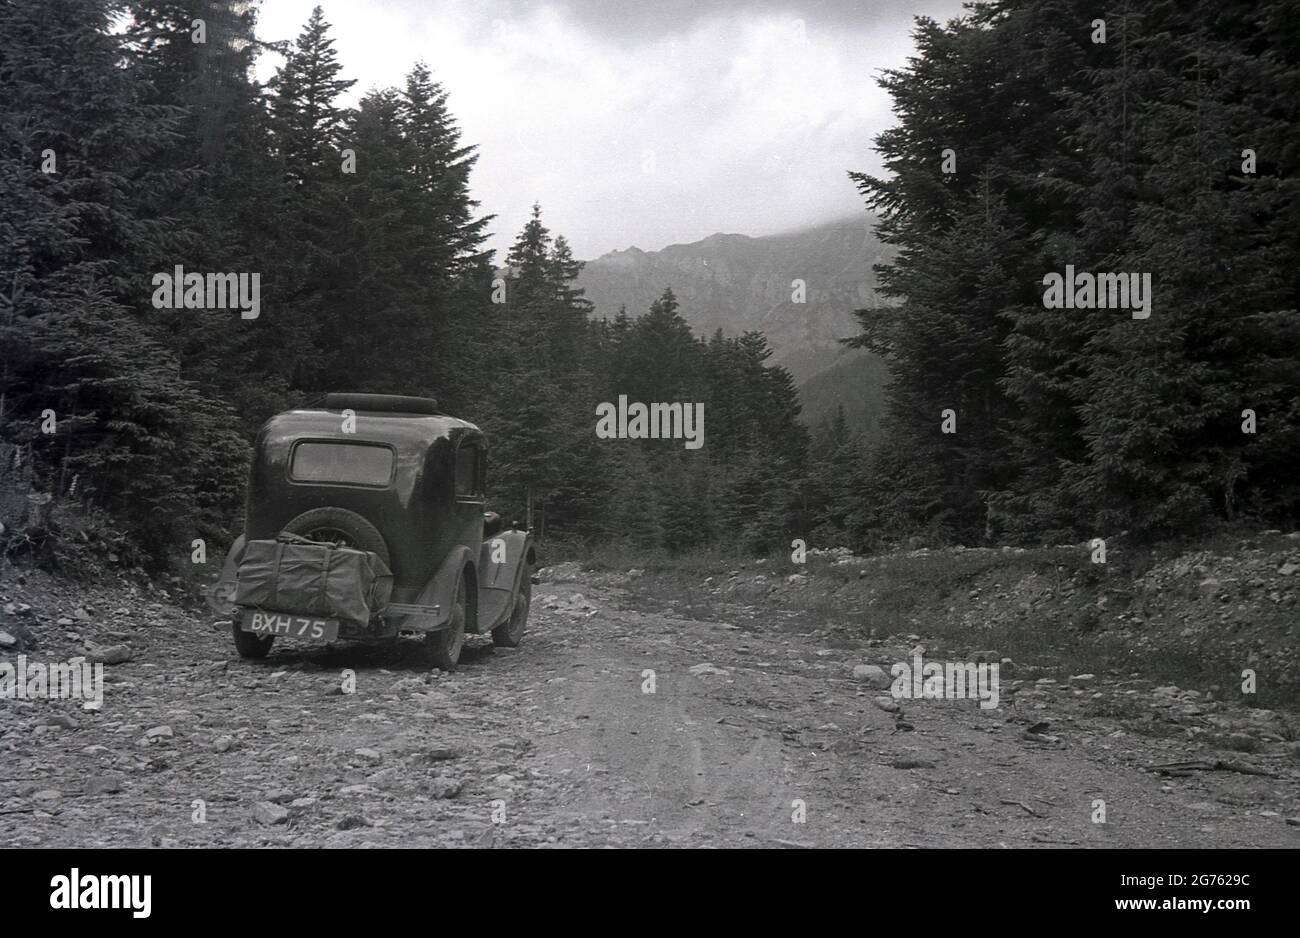 1935, historisch, ein Auto der Zeit, mit einem britischen Kennzeichen, gong auf einer felsigen, Schotterpiste hoch auf einem Waldgebiet der Sudeten oder Sudetenberge, Sudetenland, Tschechoslowakei. Sie sind der höchste Teil des so genannten Böhmischen Massivs, einer Reihe von Bergketten, die Teile mitteleuropas bedecken. Stockfoto